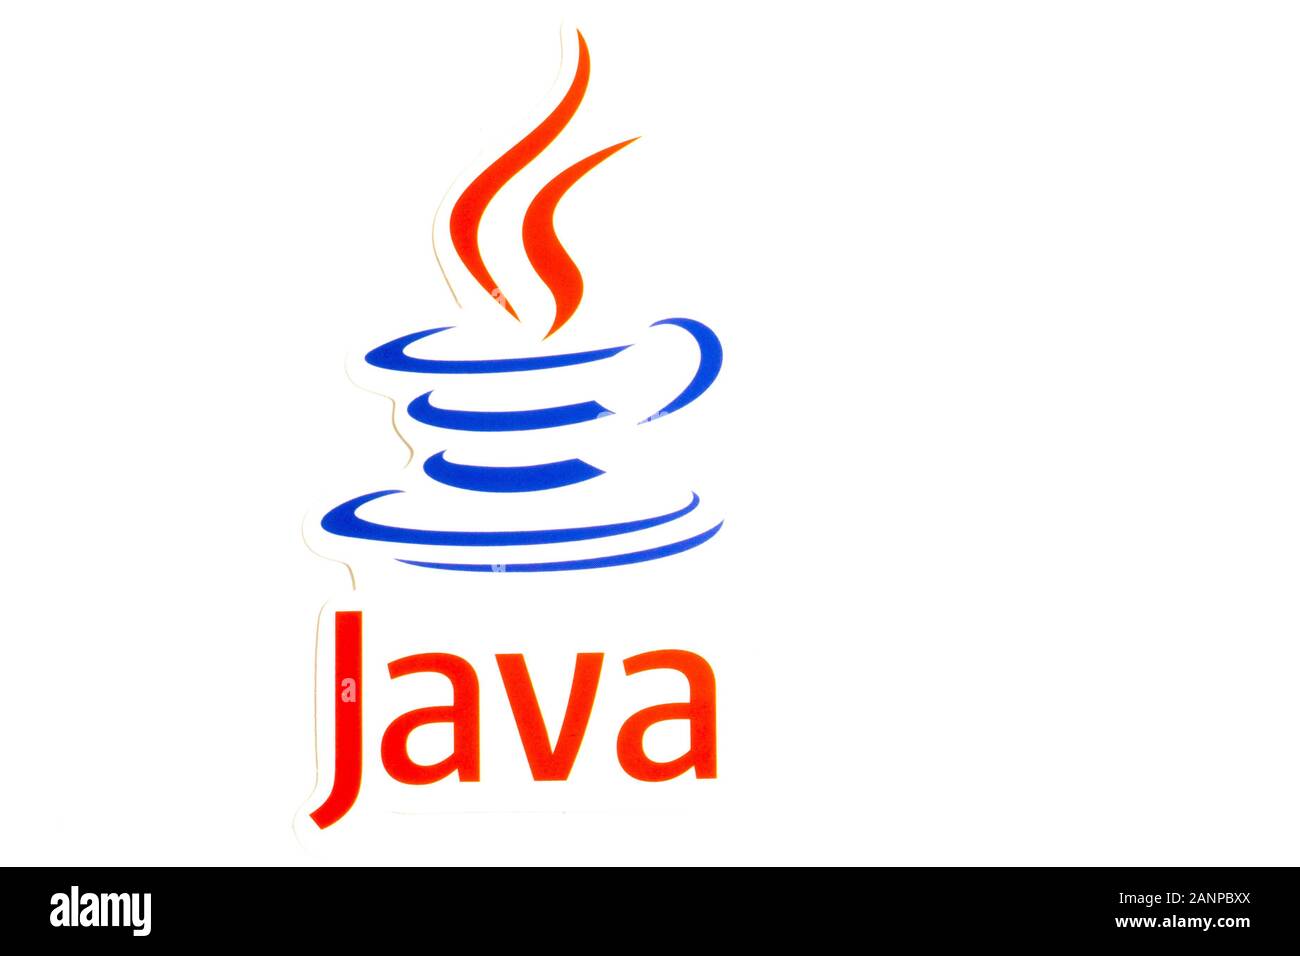 Los Angeles, Californie, États-Unis - 17 janvier 2020: Logo Java sur fond blanc et espace de copie, éditorial illustratif Banque D'Images